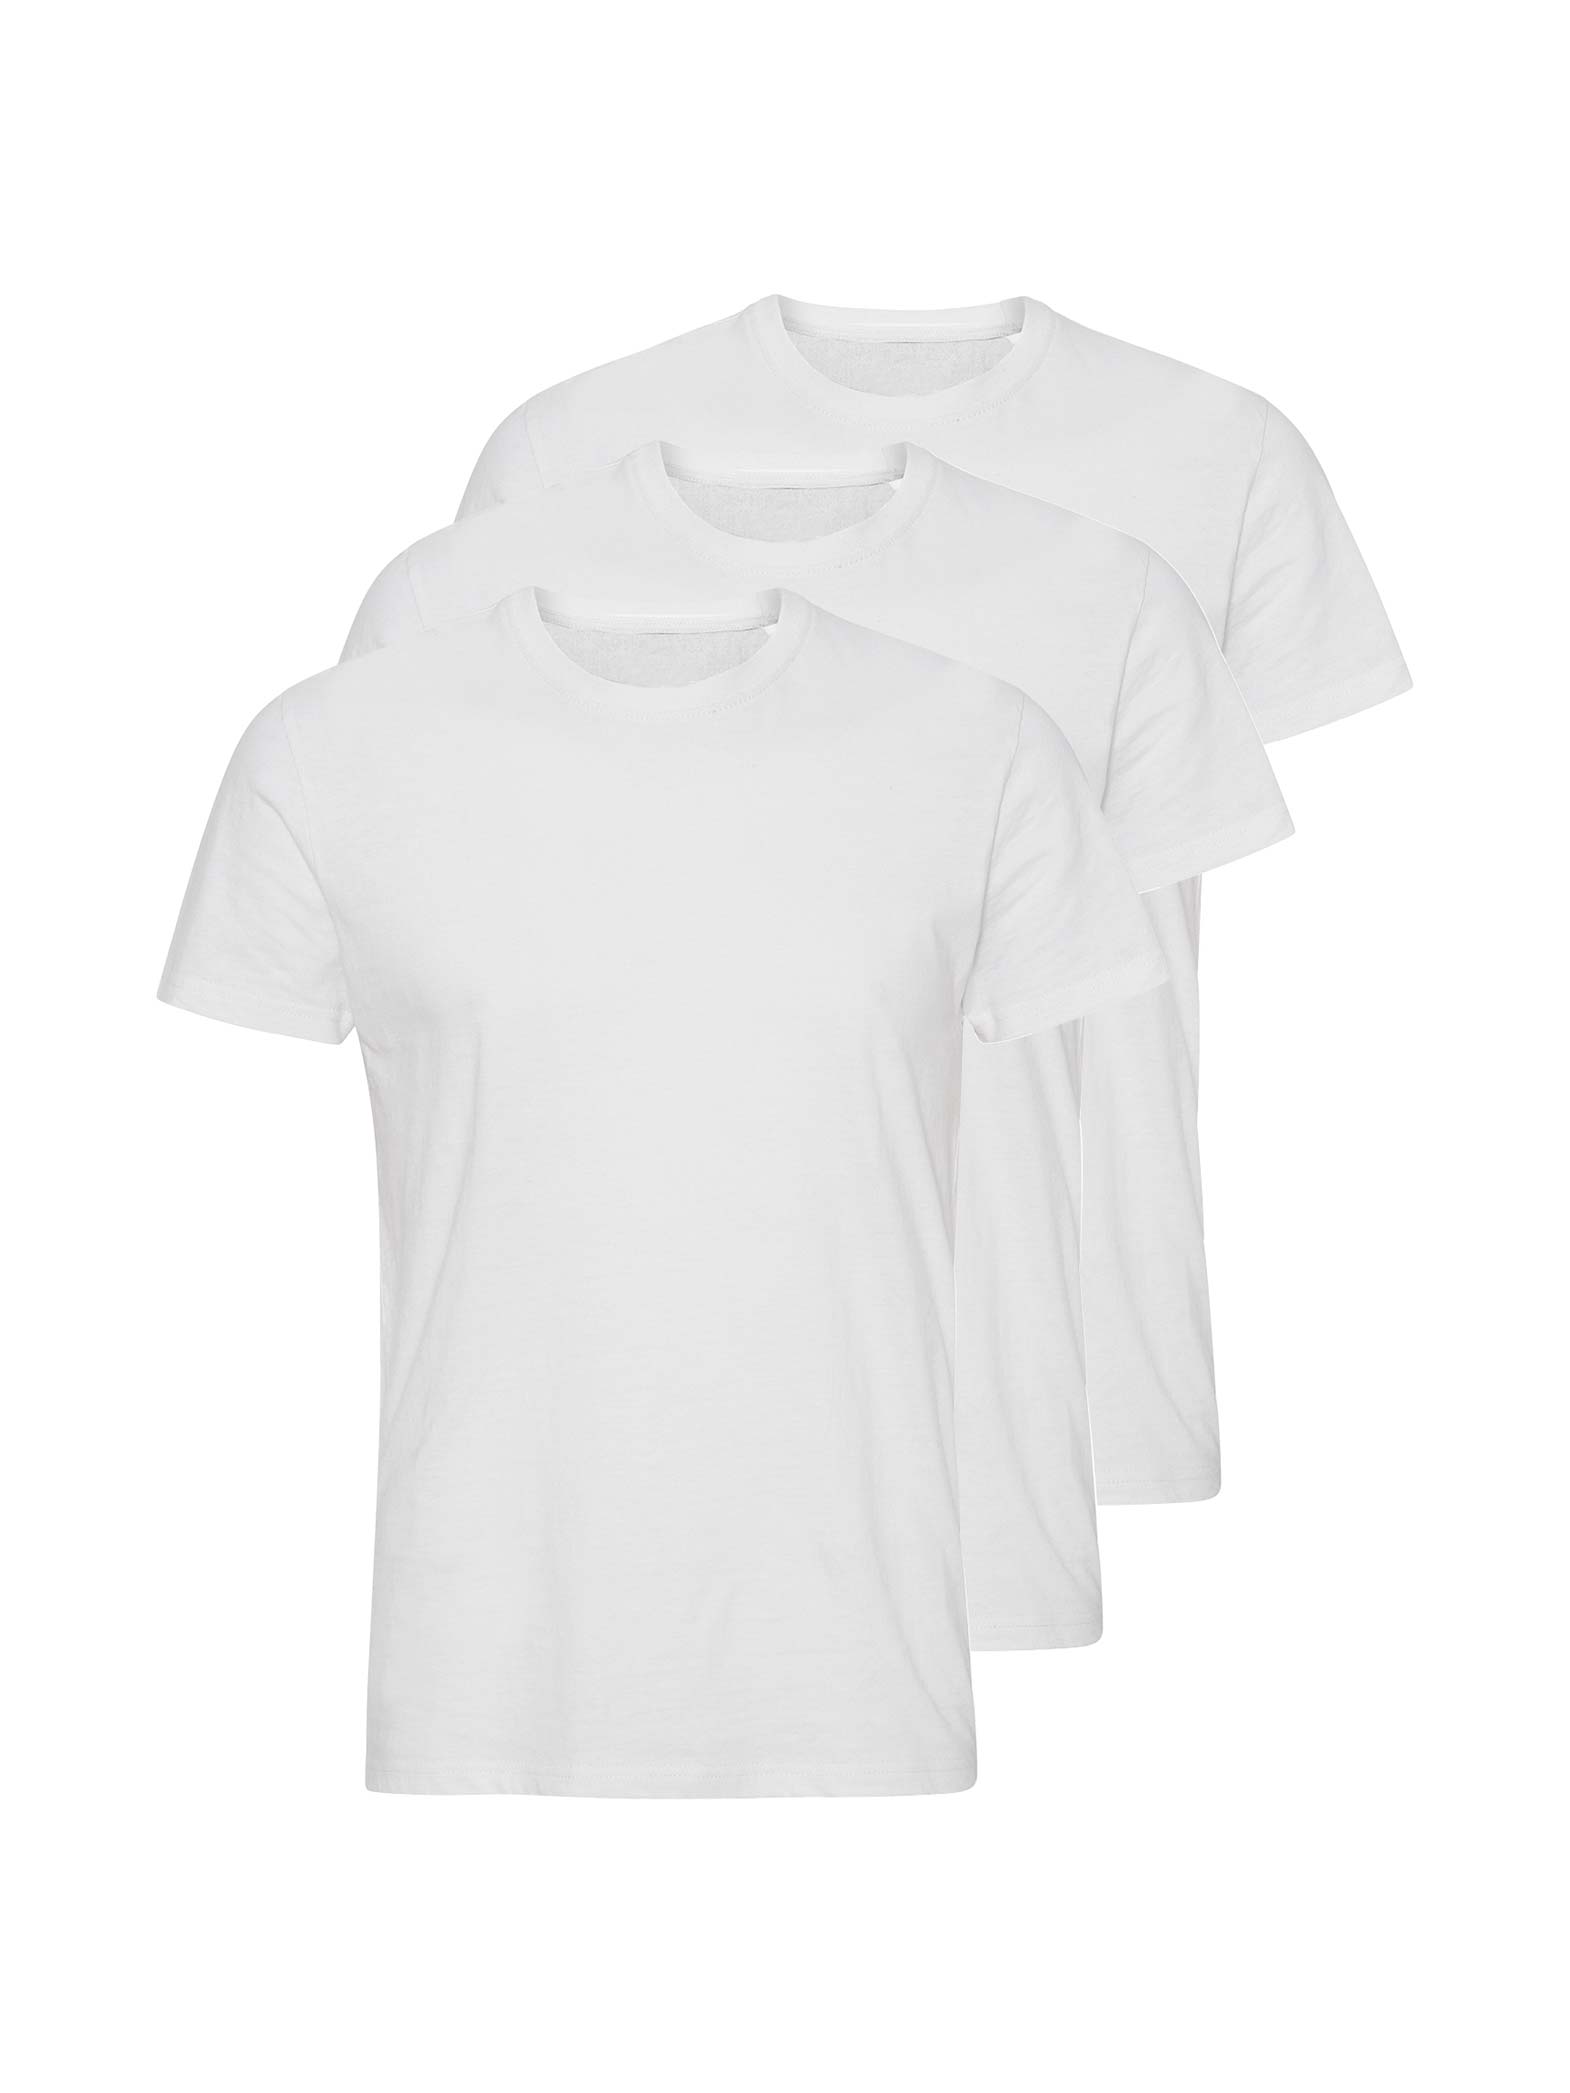 Ironisk finansiere sektor Marcus - Roxy basic t-shirts 3-pak i hvid